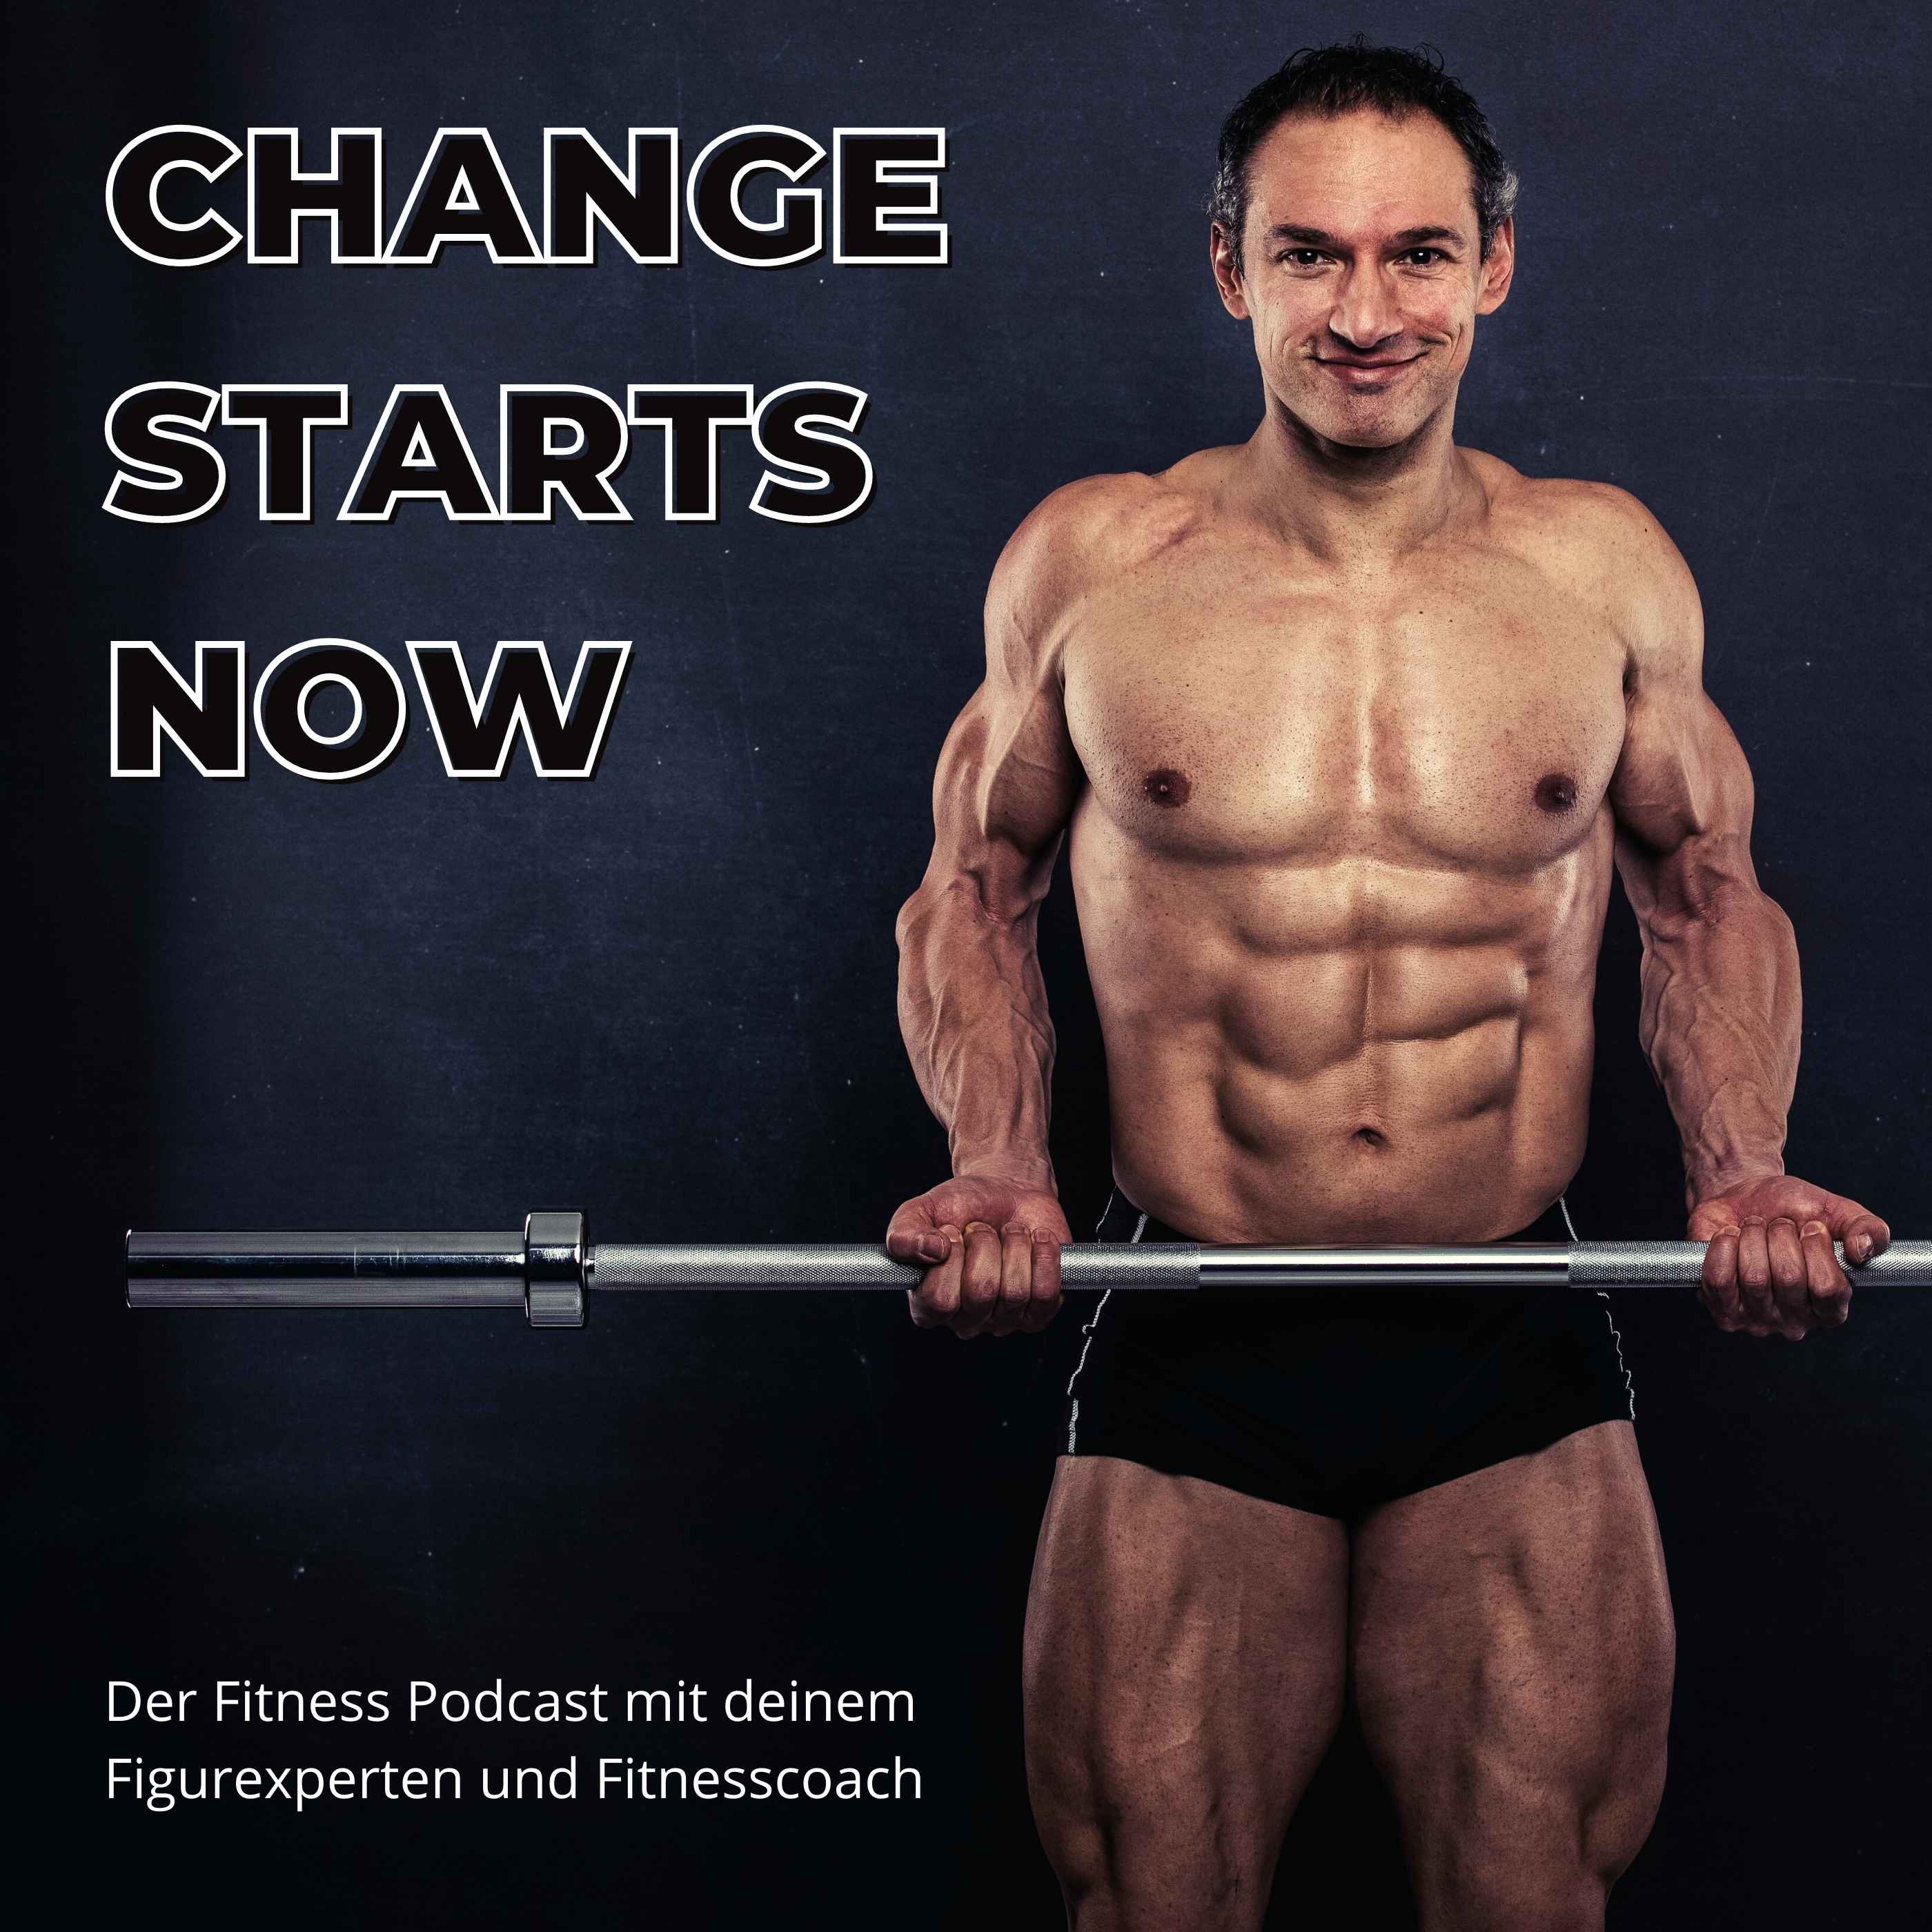 CHANGE STARTS NOW - Der Fitness-Podcast mit Deinem Figurexperten